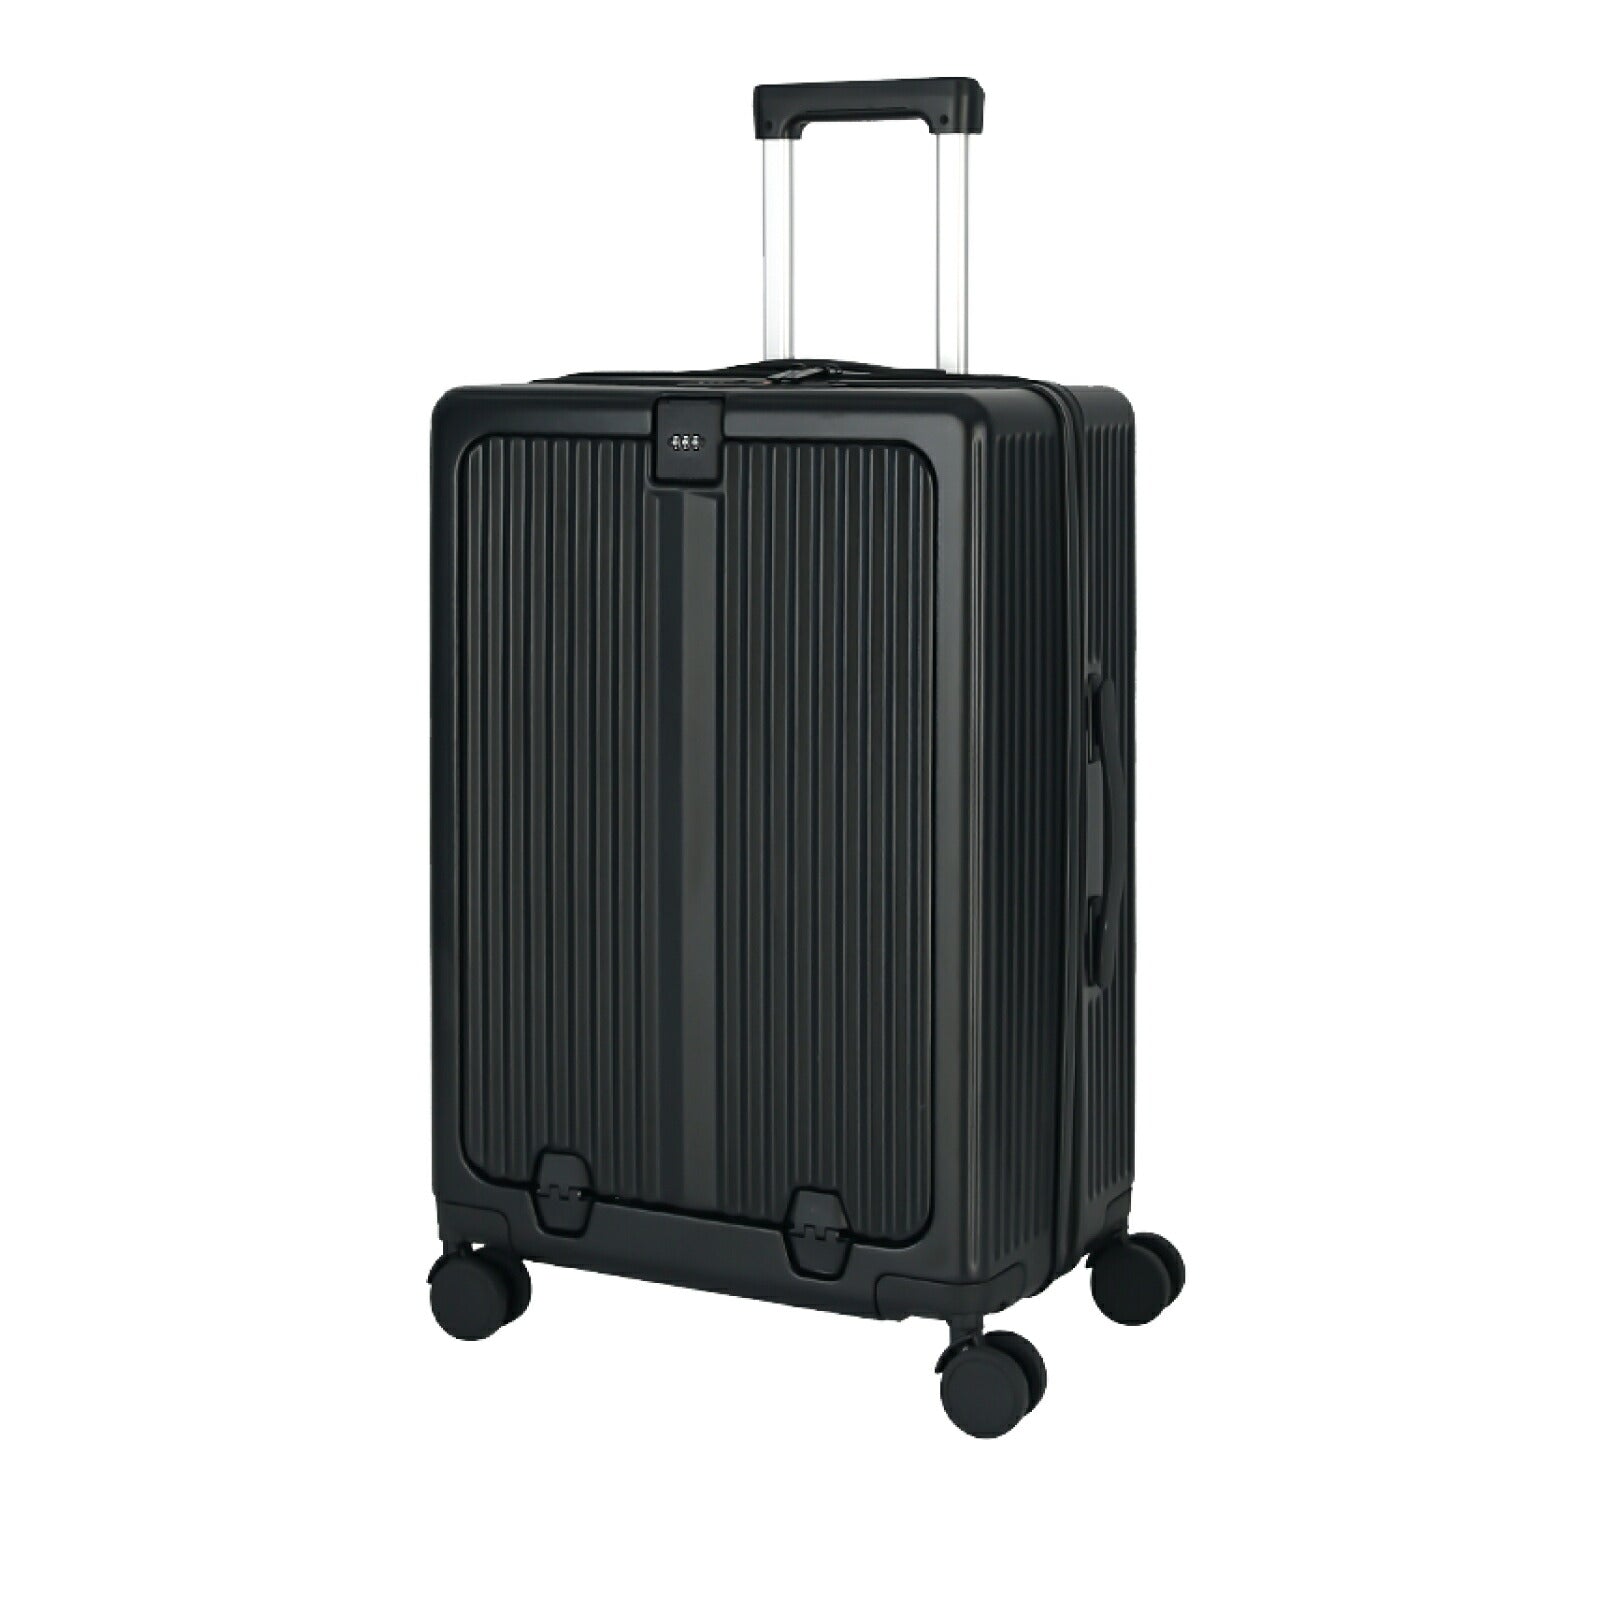 スーツケース mサイズ USBポート付き キャリーケース フロントオープン Mサイズ 64L 8カラー選ぶ 4-7日用 泊まる カップホルダー付き 軽量 大容量 多収納ポケット トランク 修学旅行 海外旅行 国内旅行 sc301-24